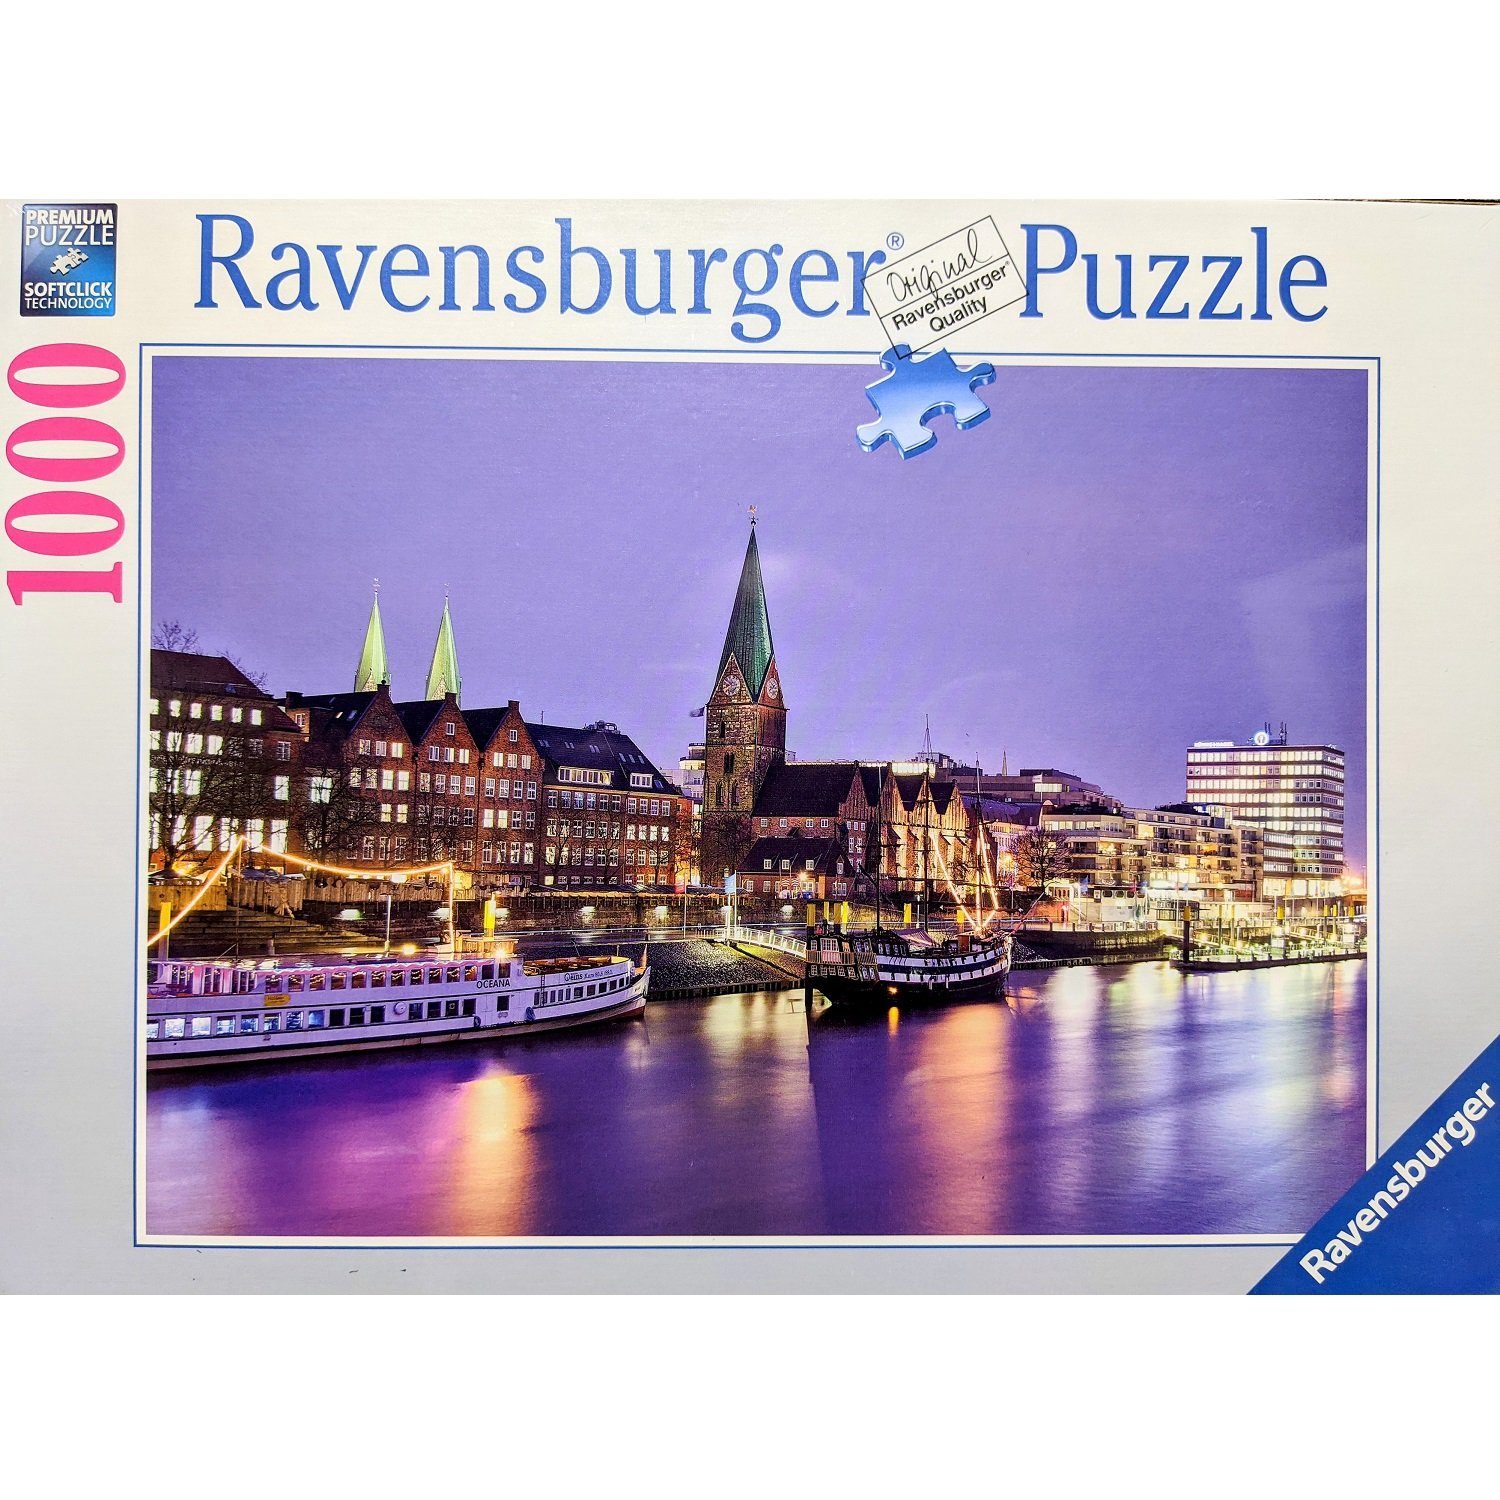 Ravensburger Puzzle Ravensburger - Weserblick Bremen, 1000 Teile Puzzle, 1000 Puzzleteile